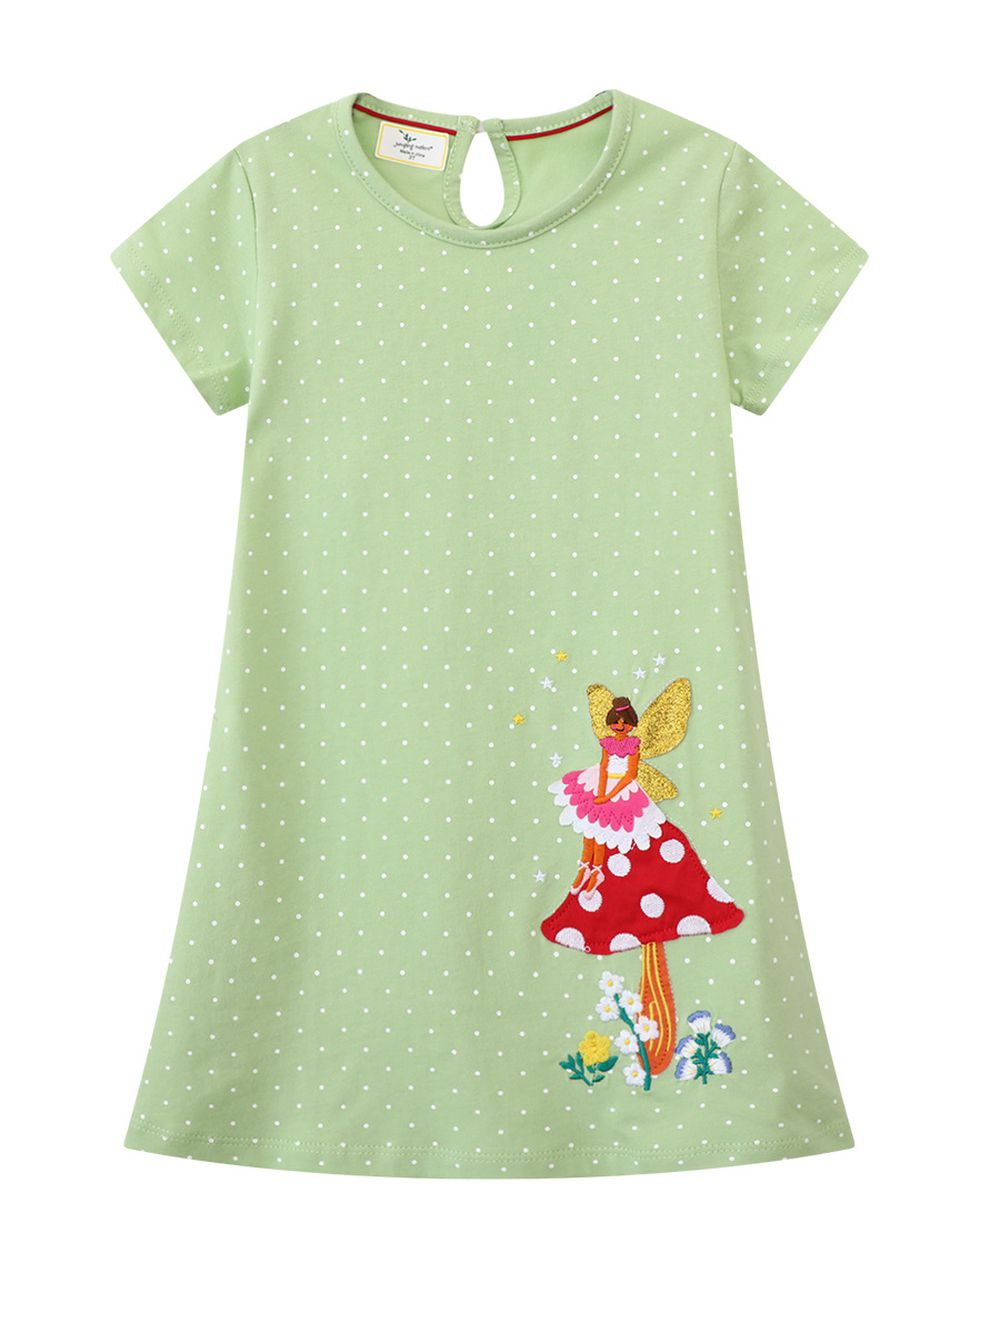 Jumping meters - 棉質圓領短袖洋裝-貼布繡小仙子-綠色